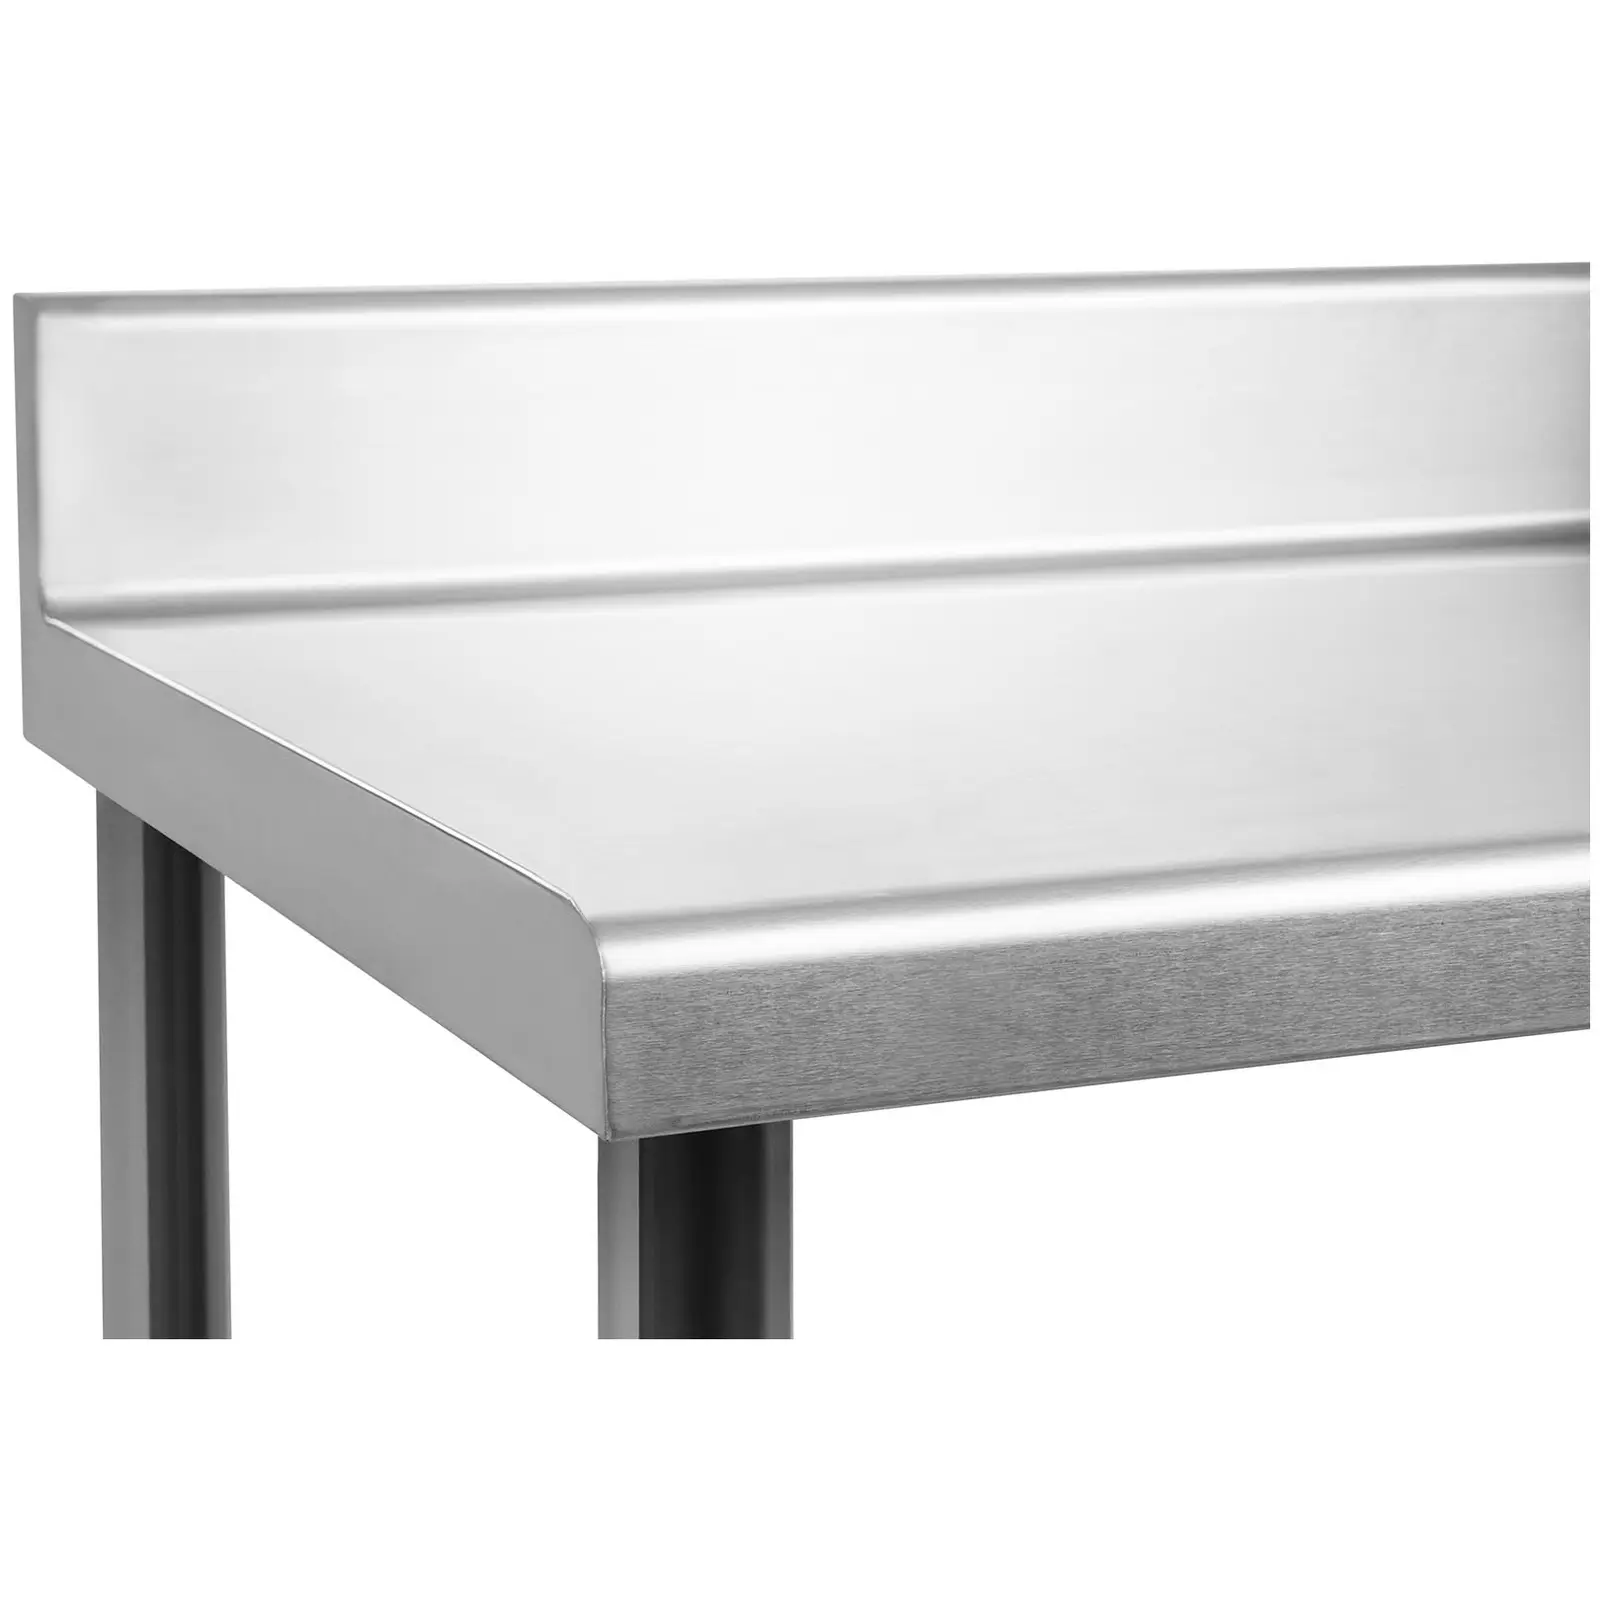 RST työpöytä - 120 x 60 cm - roiskelevy - 137 kg kantavuus